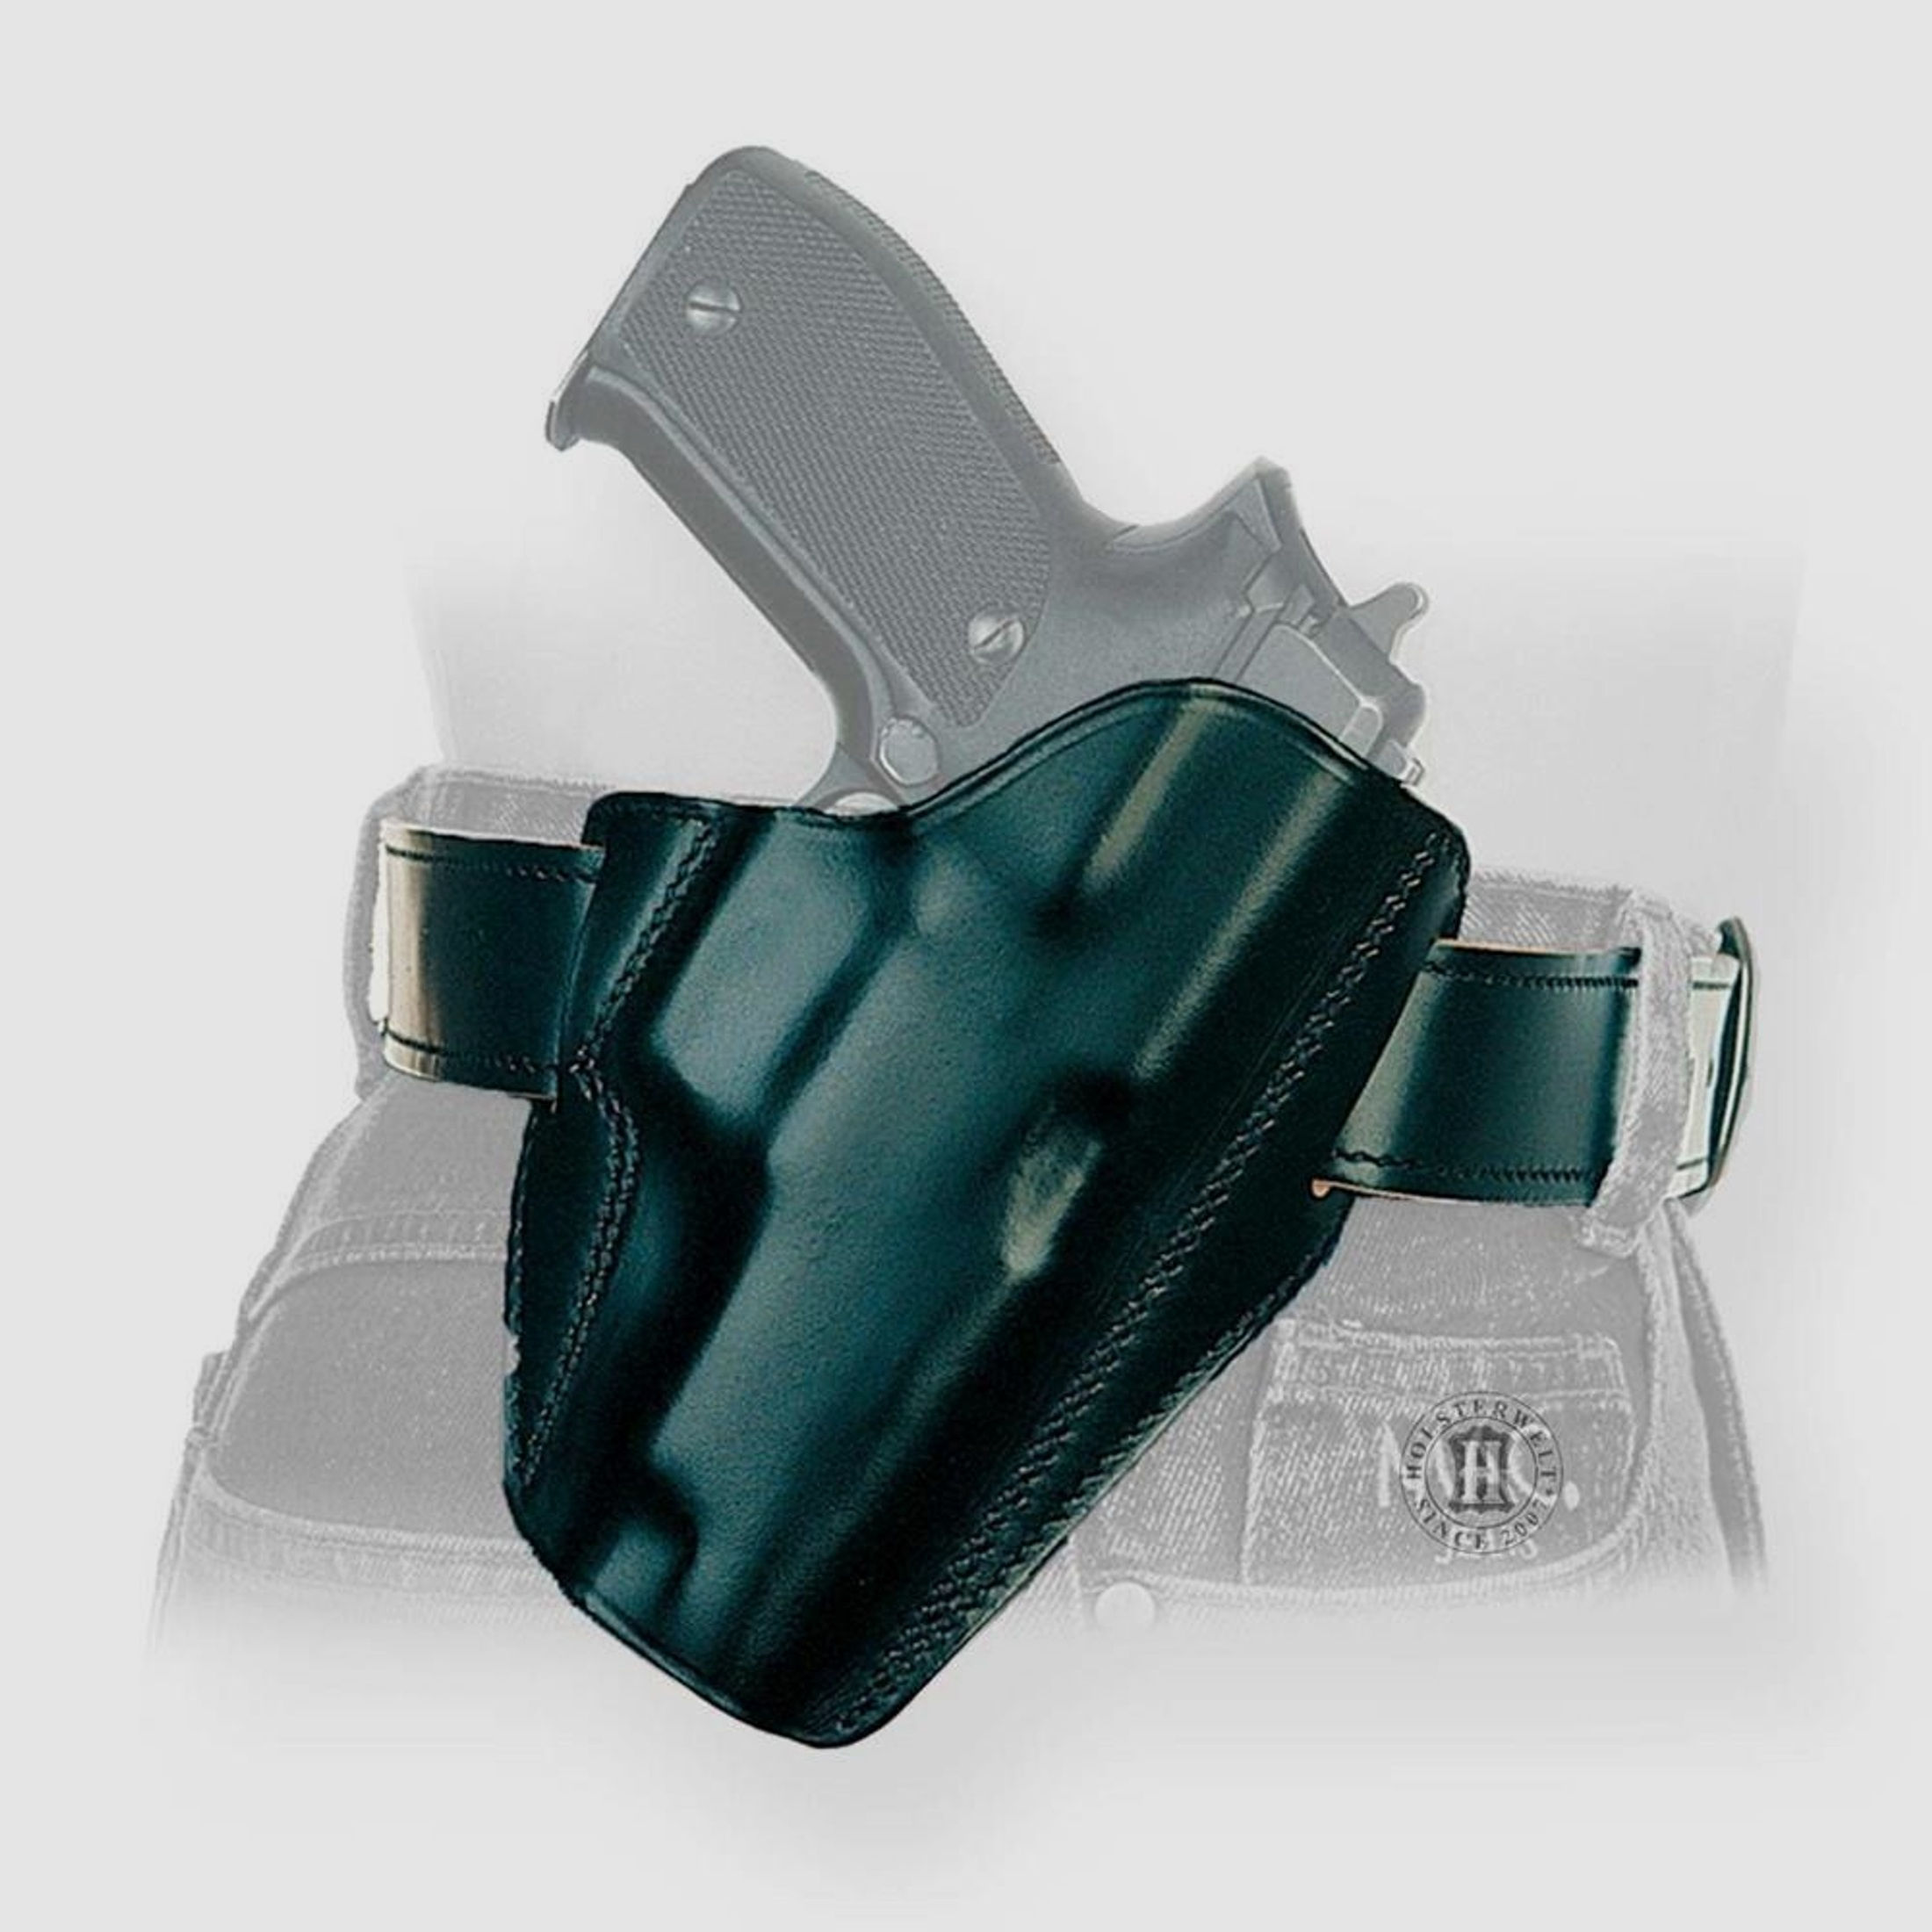 Schnellziehholster LIGHTNING "FBI" Glock 20/21 ,S&W SIGMA C, Zoraki 917-Linkshänder-Braun